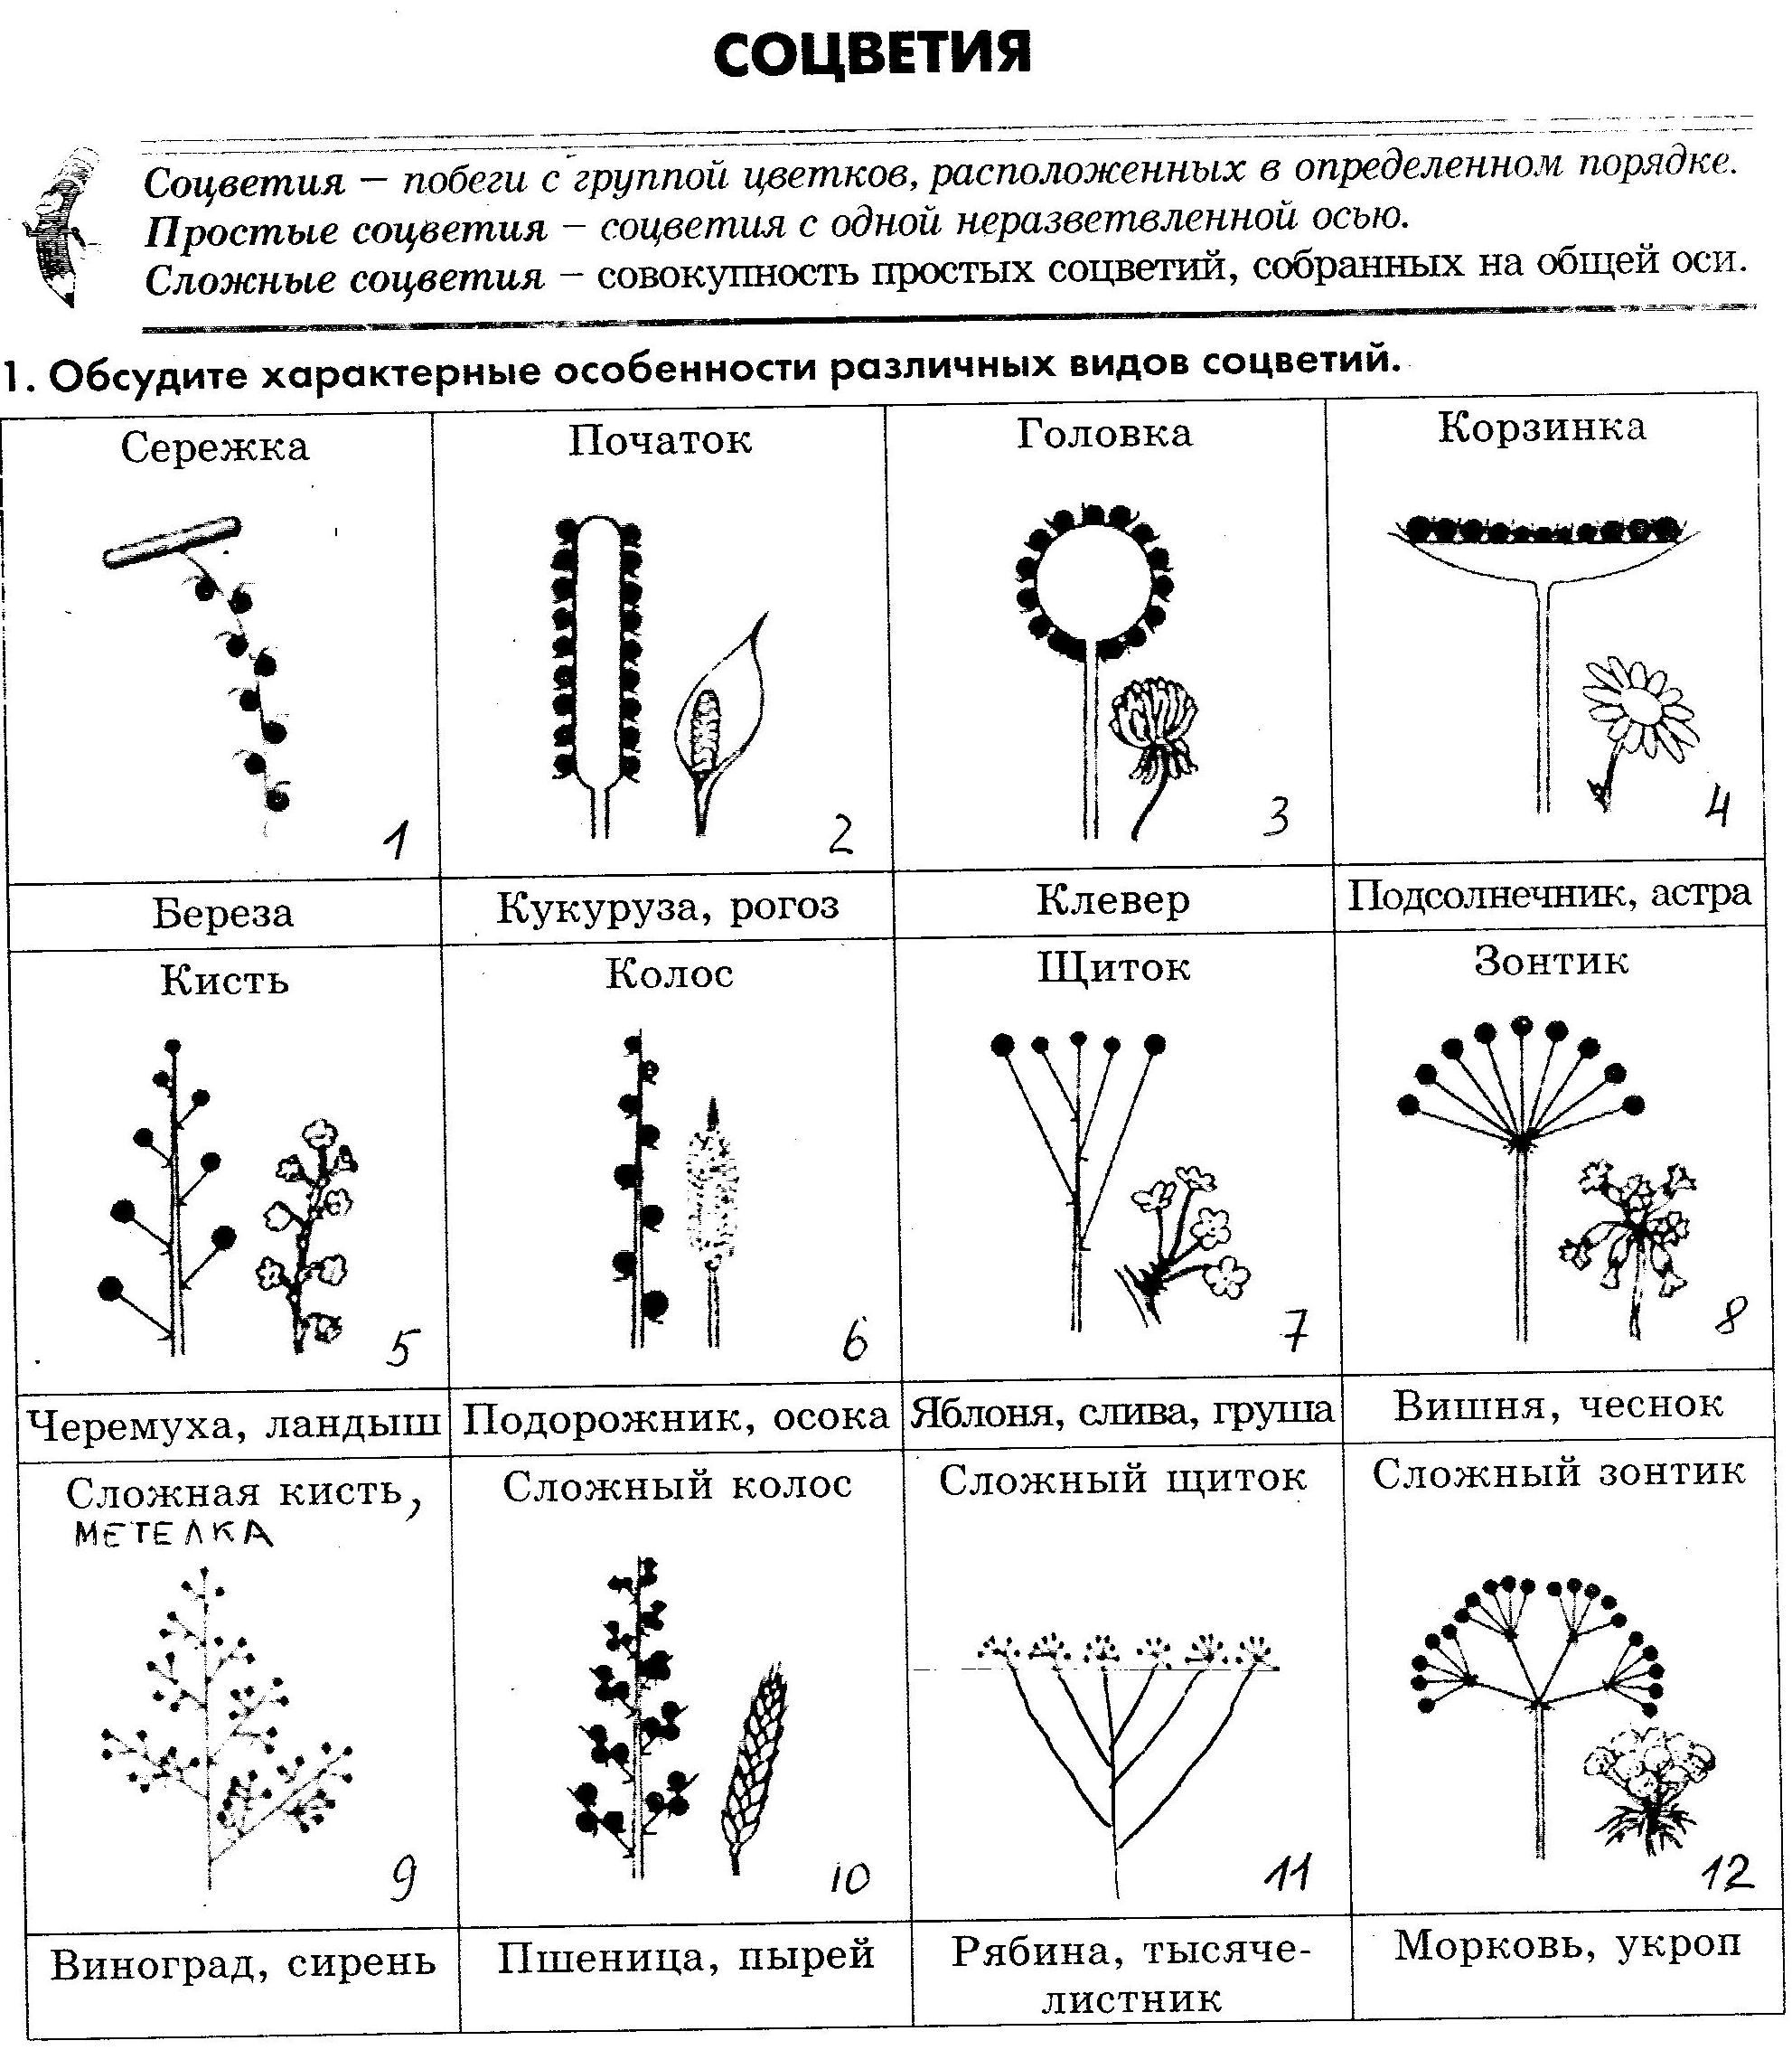 Какие соцветия изображены на рисунках. Таблица название соцветия схема. Схема 10 соцветий. Типы соцветий таблица соцветие схема растения. Схема классификации соцветий цветковых растений.